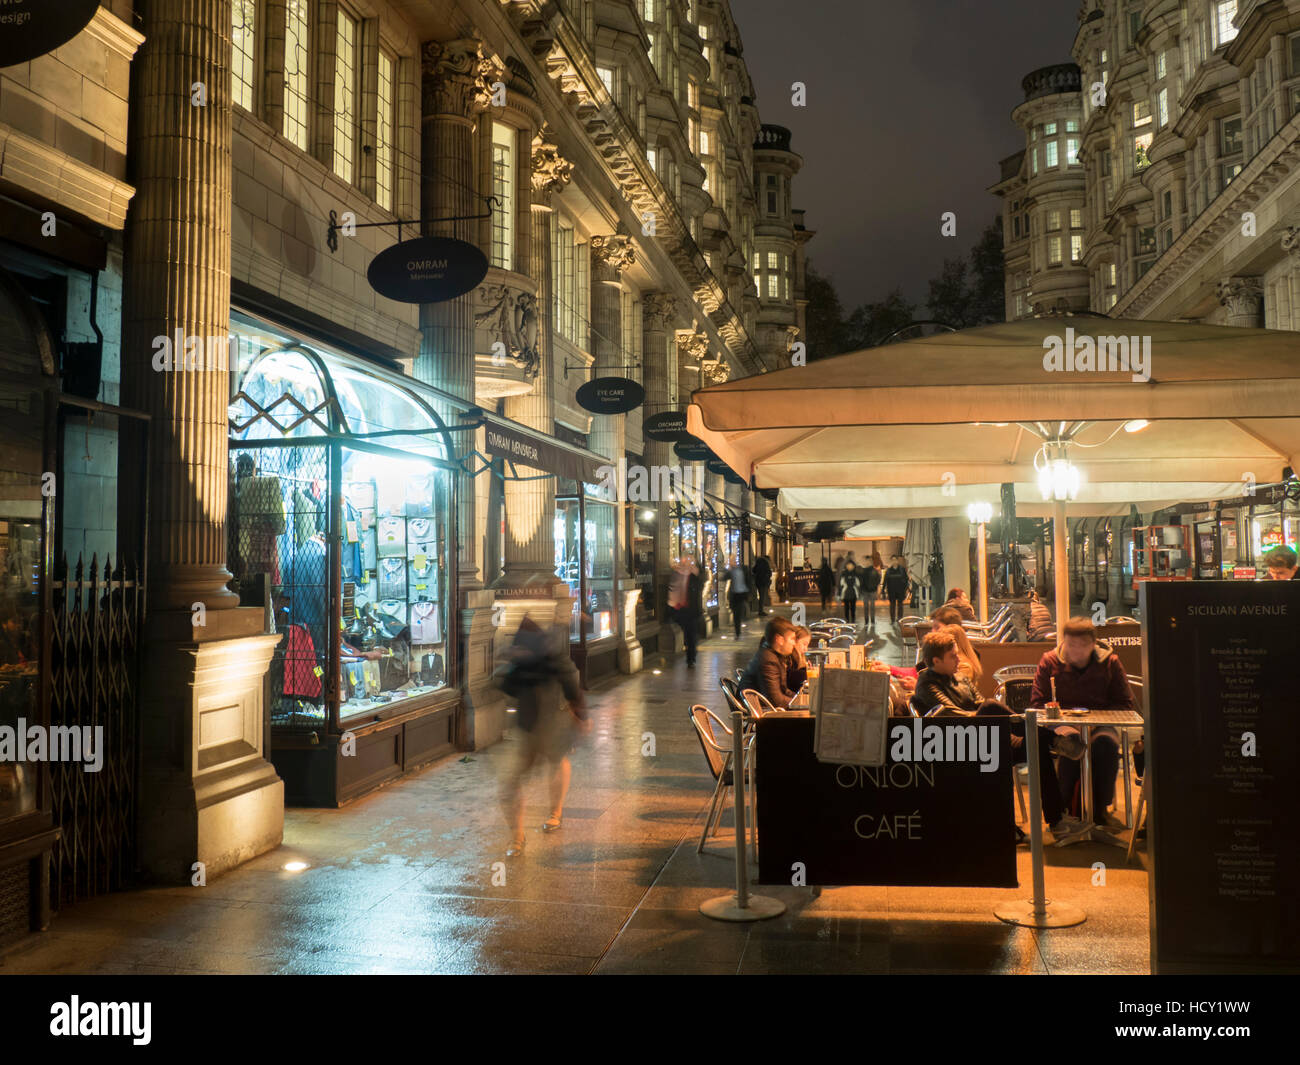 La nuit de l'Avenue sicilien, London, UK Banque D'Images